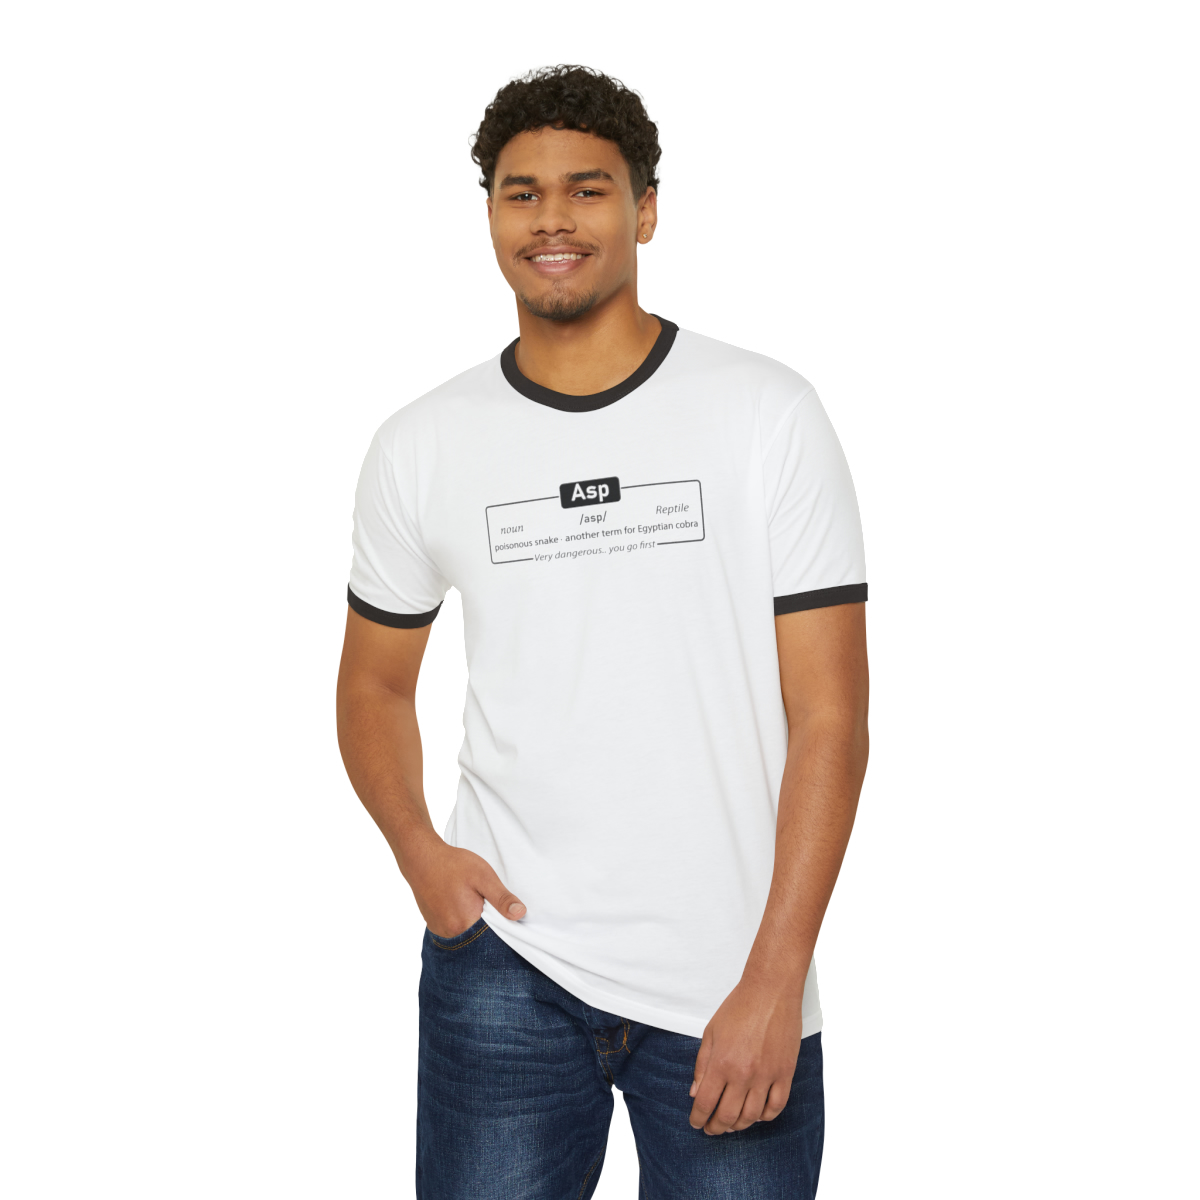 Asp - Unisex Cotton Ringer T-Shirt